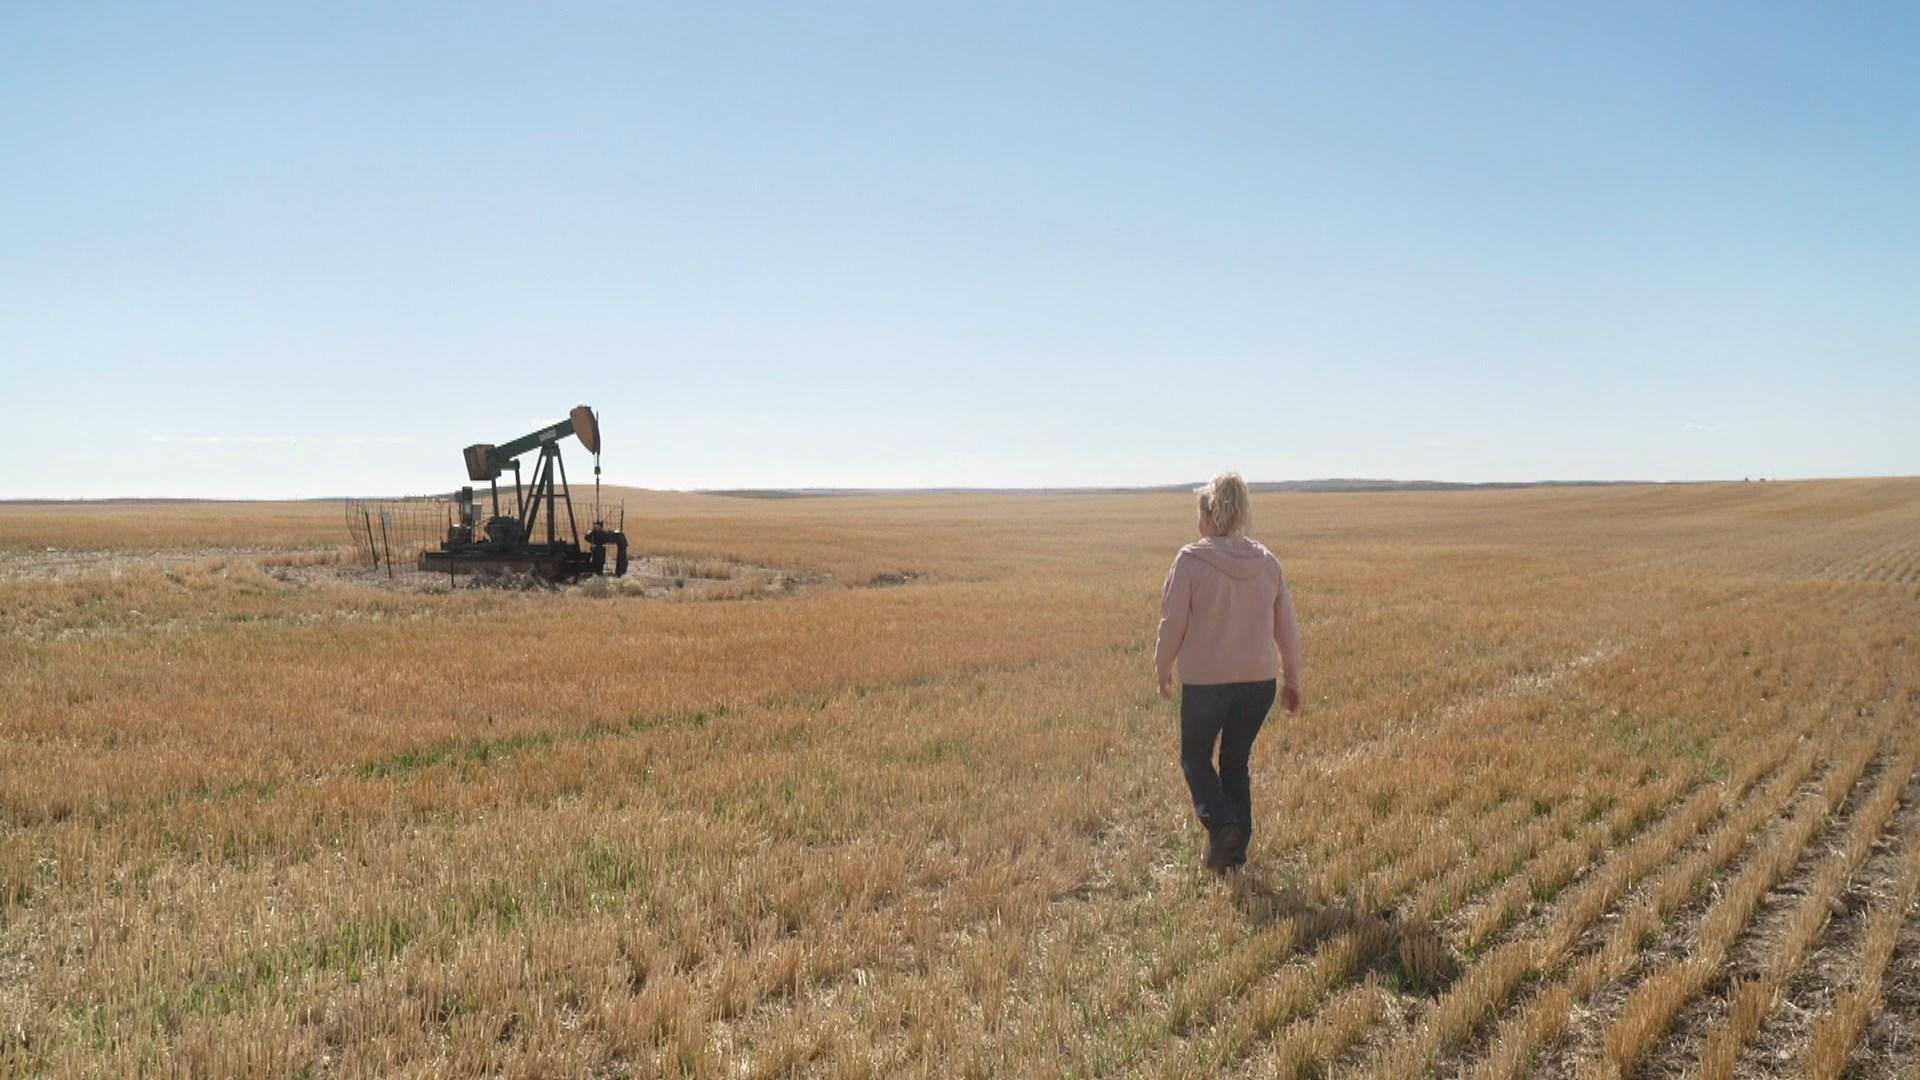 Kathy Gliko doit contourner les puits de pétrole abandonnés pour cultiver son champ. [RTS]